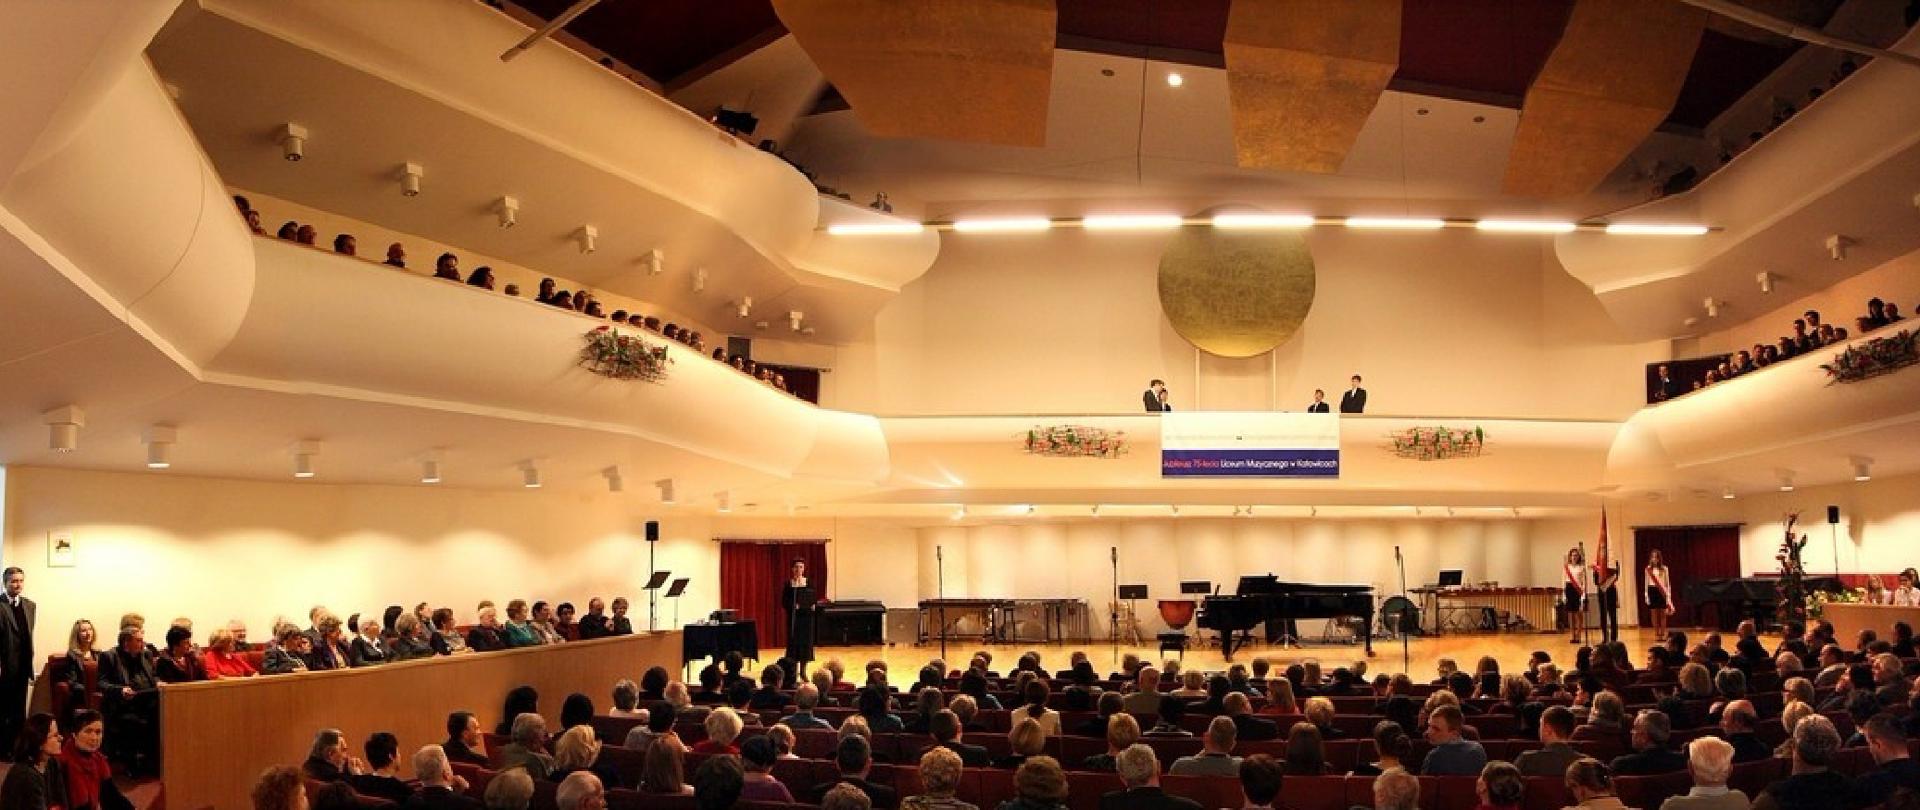 Sala koncertowa ZPSM - widok od strony publiczności, na scenie poczet sztandarowy oraz przemawiająca dyrektor ZPSM